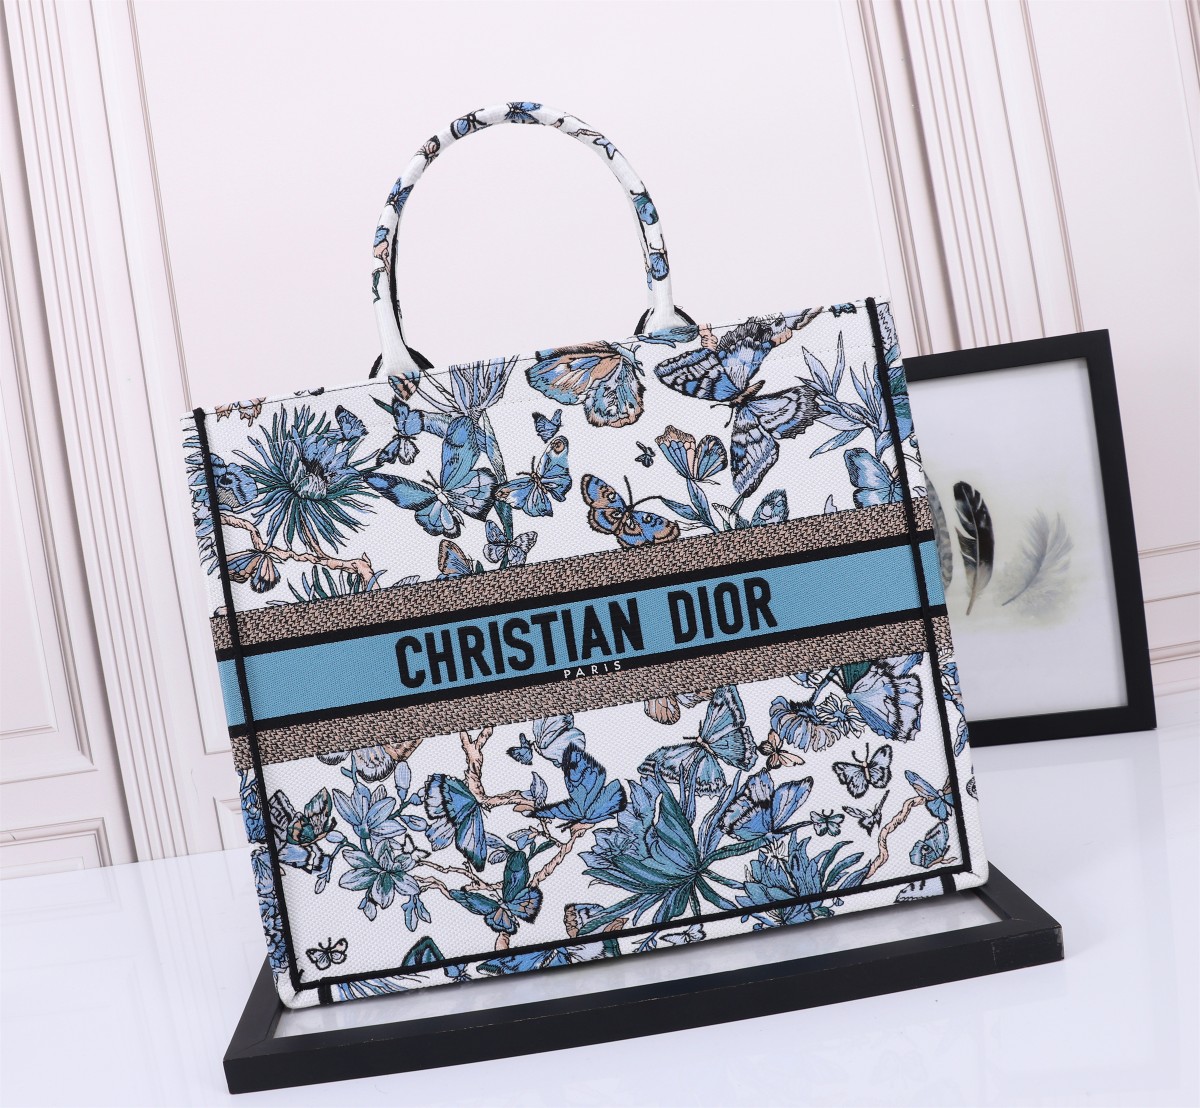 Replcia billig aus China
 Dior Book Tote Taschen Handtaschen Tragetaschen Blau Weiß Stickerei